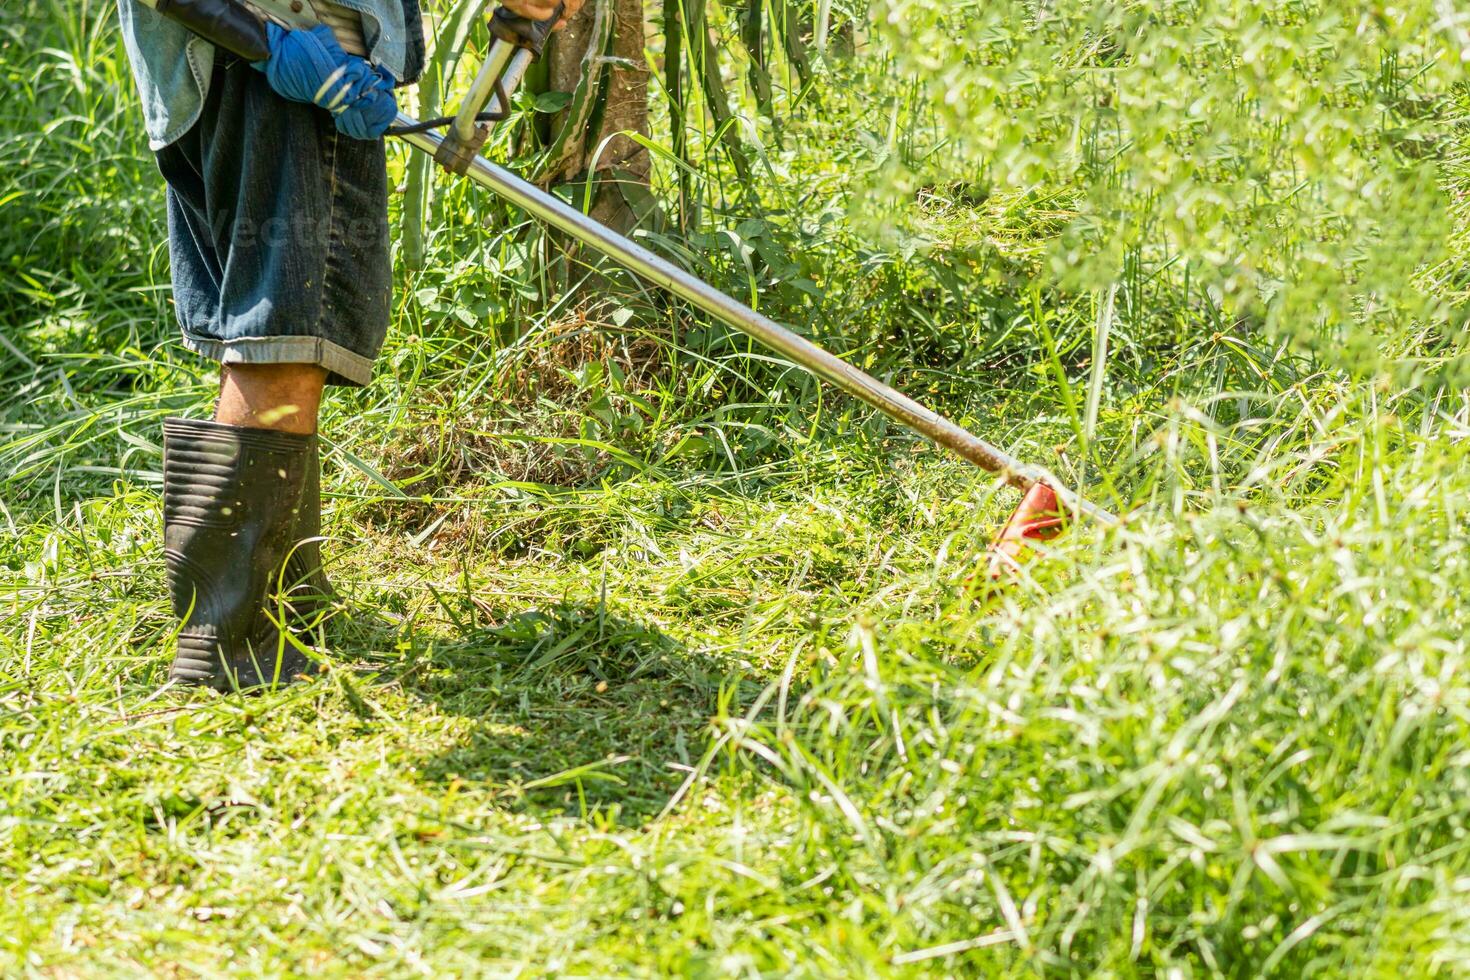 granjero utilizar siega cortar césped trabajo al aire libre a jardín verano día, uno persona hombre trabajo utilizar herramienta clíper a prado foto